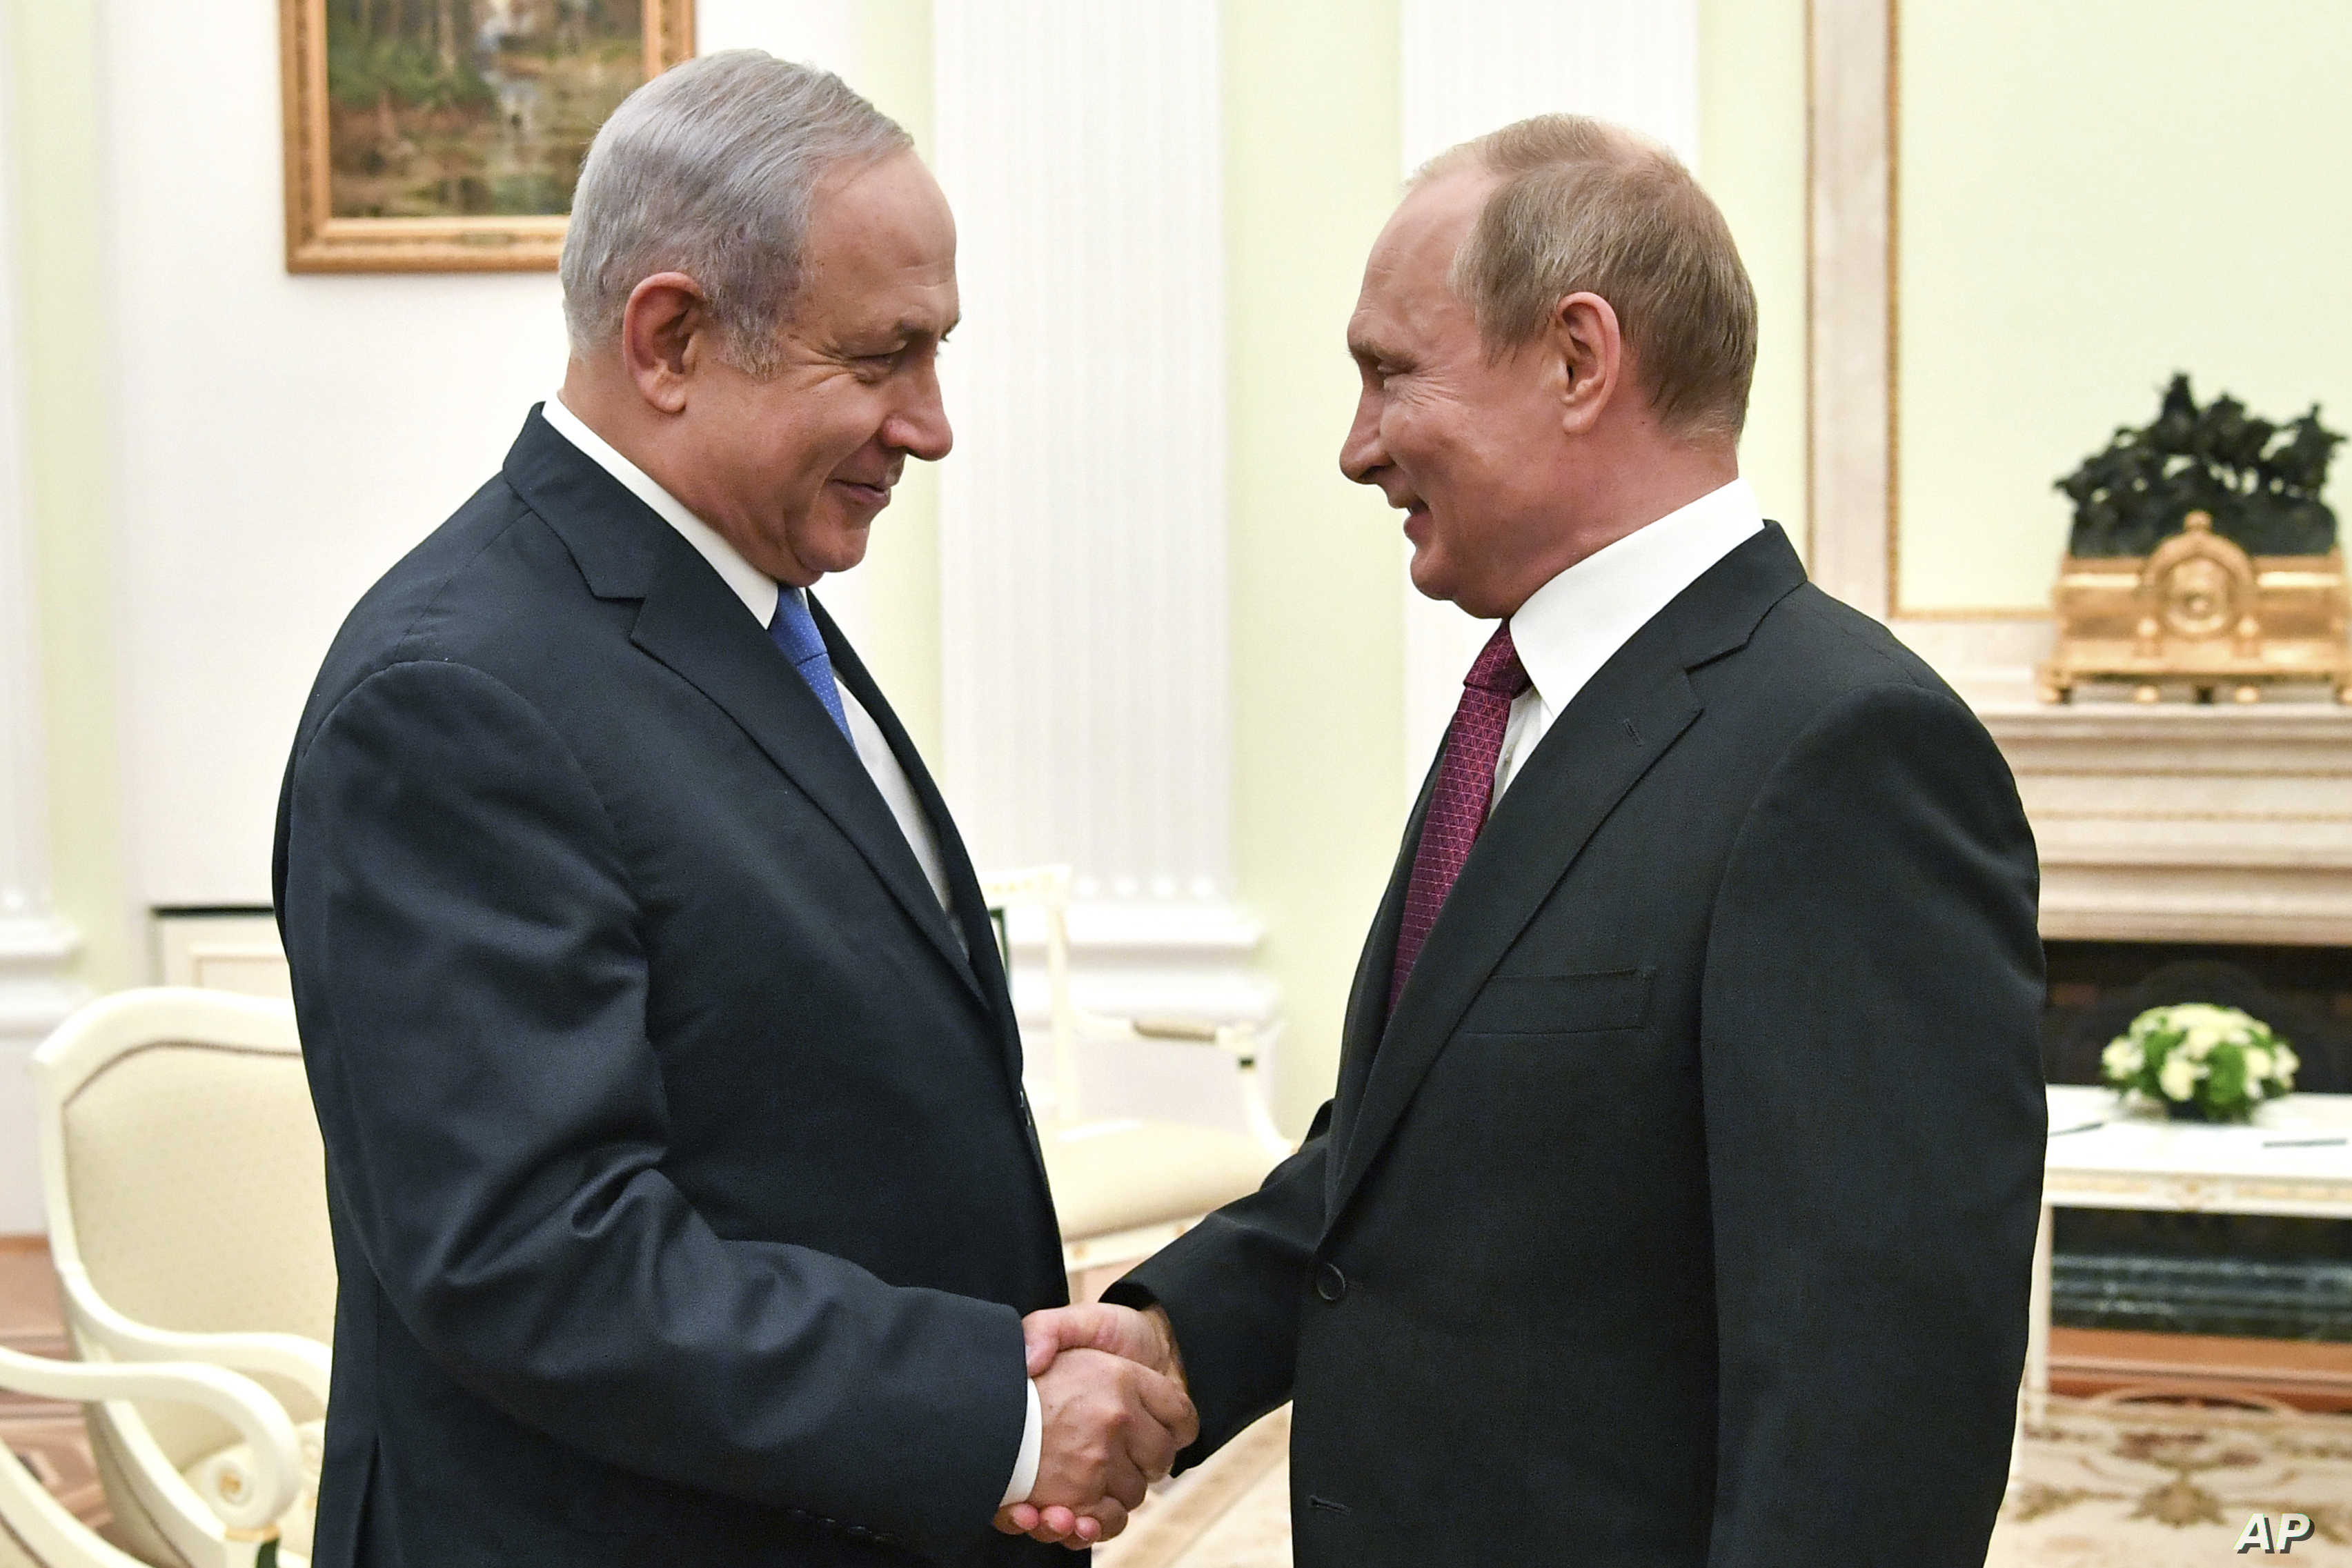 Putin: "Sen başbakan olmasaydın İsrail ile Rusya savaşa girebilirdi"